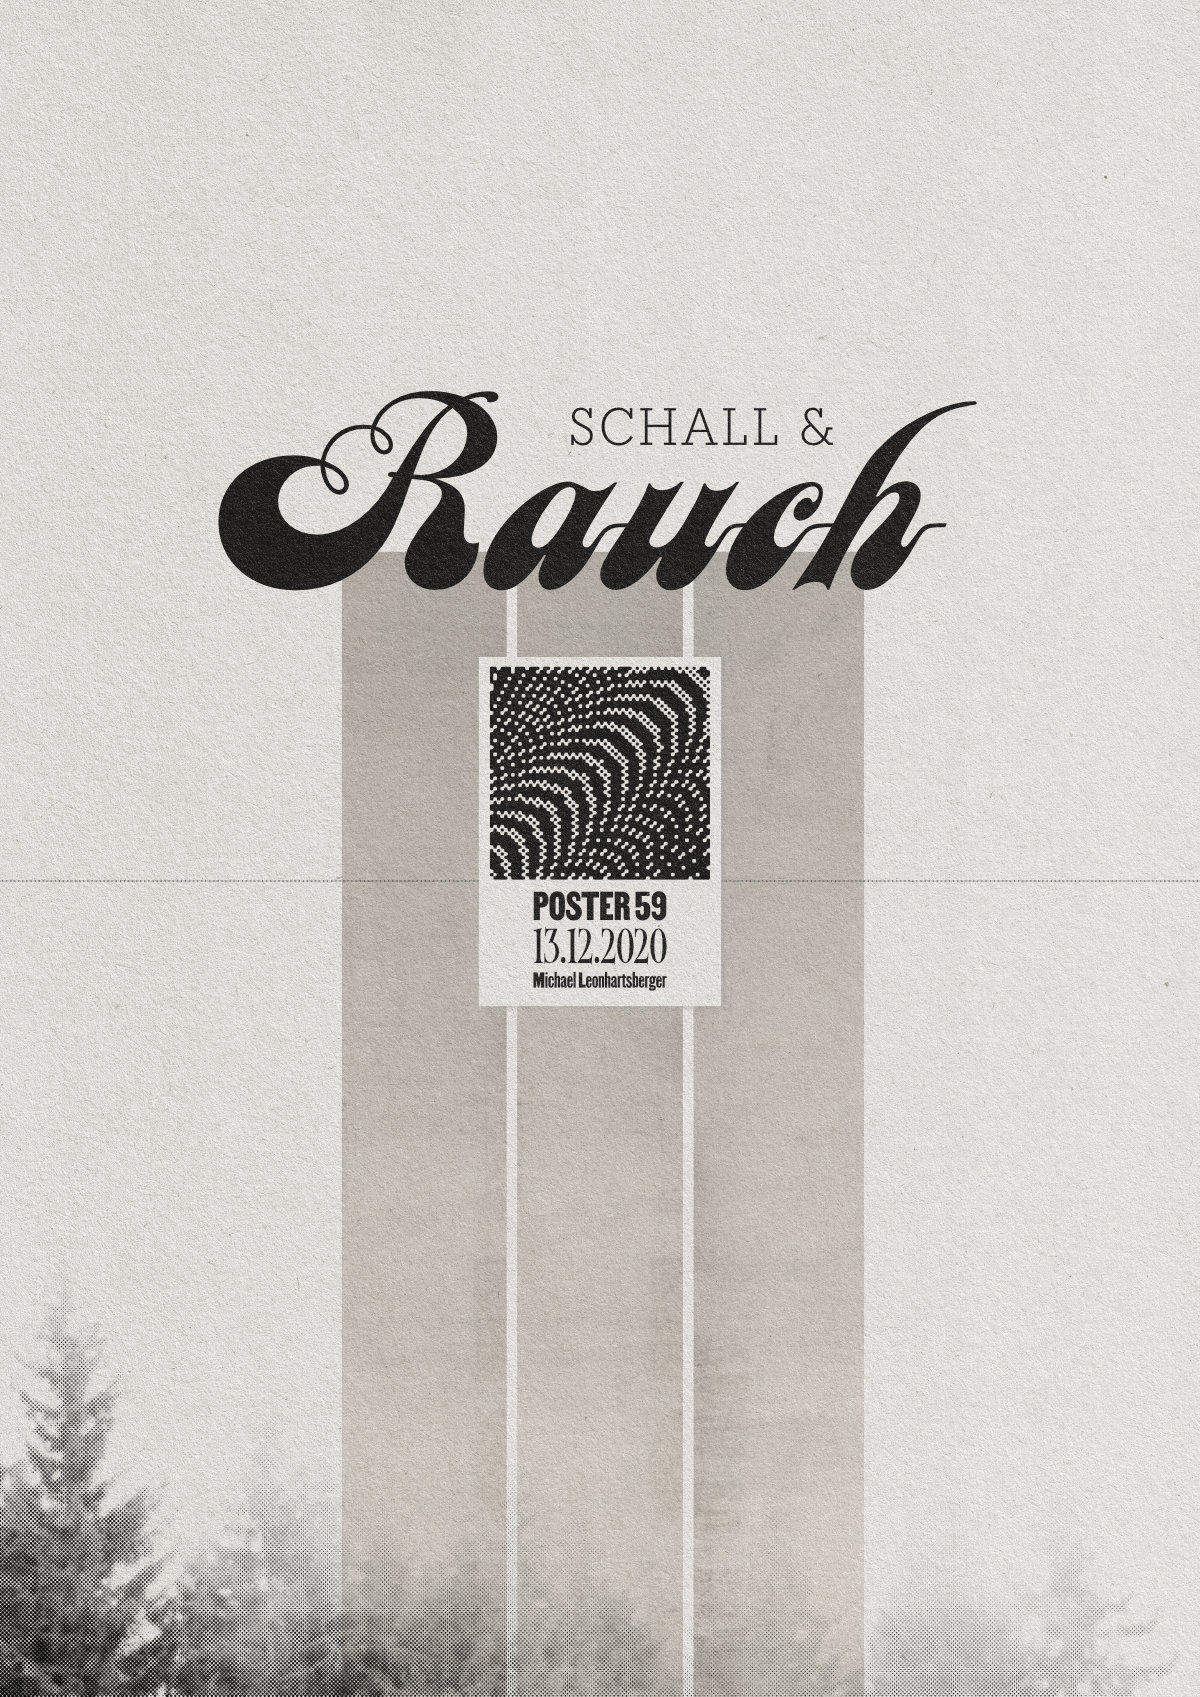 Schall & Rauch – Poster 59, 13.12.2020 – Michael Leonhartsberger